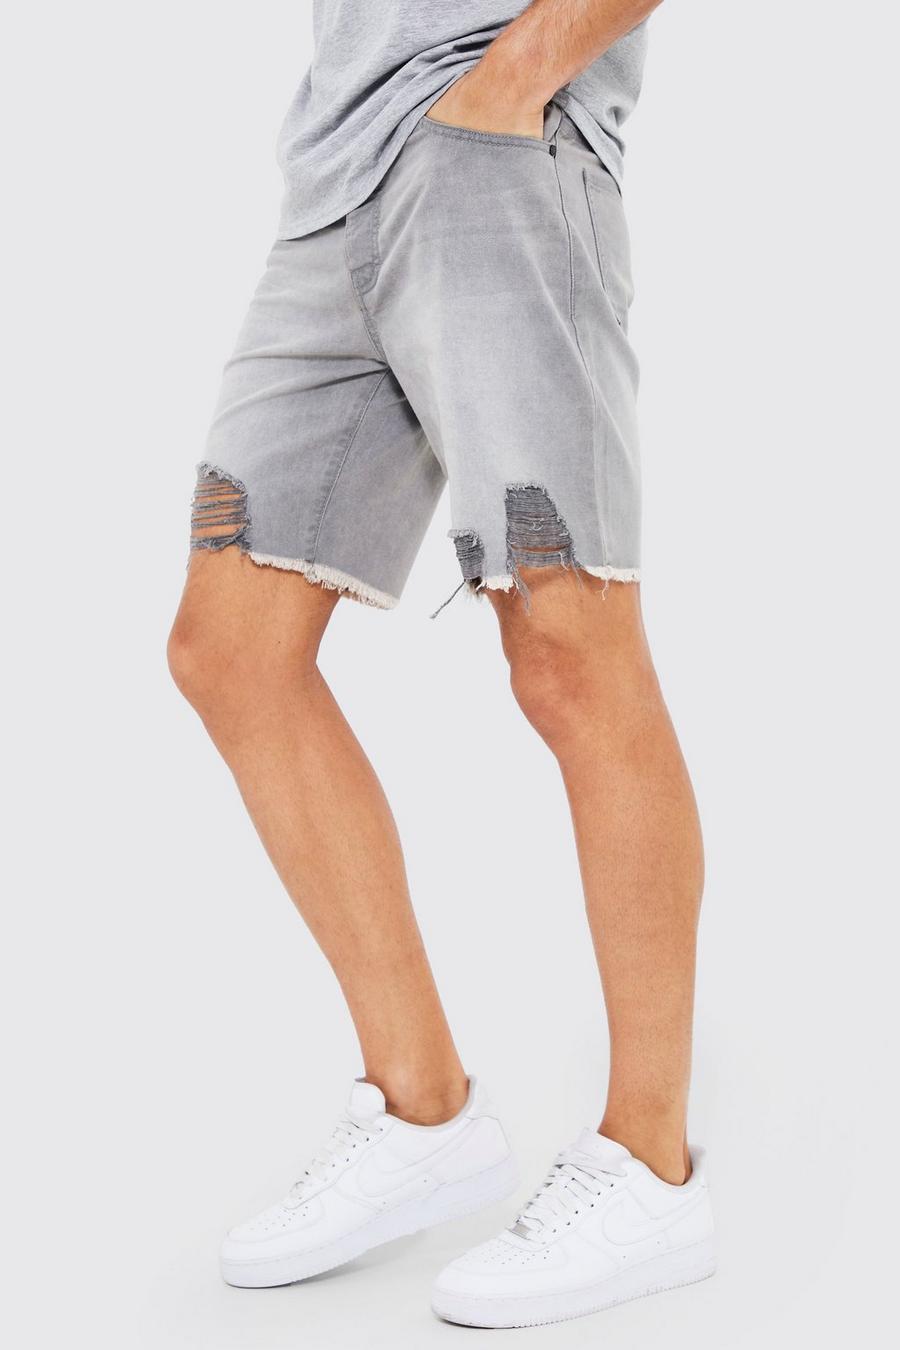 Pantalón corto Tall vaquero ajustado con bajo sin acabar, Light grey grigio image number 1